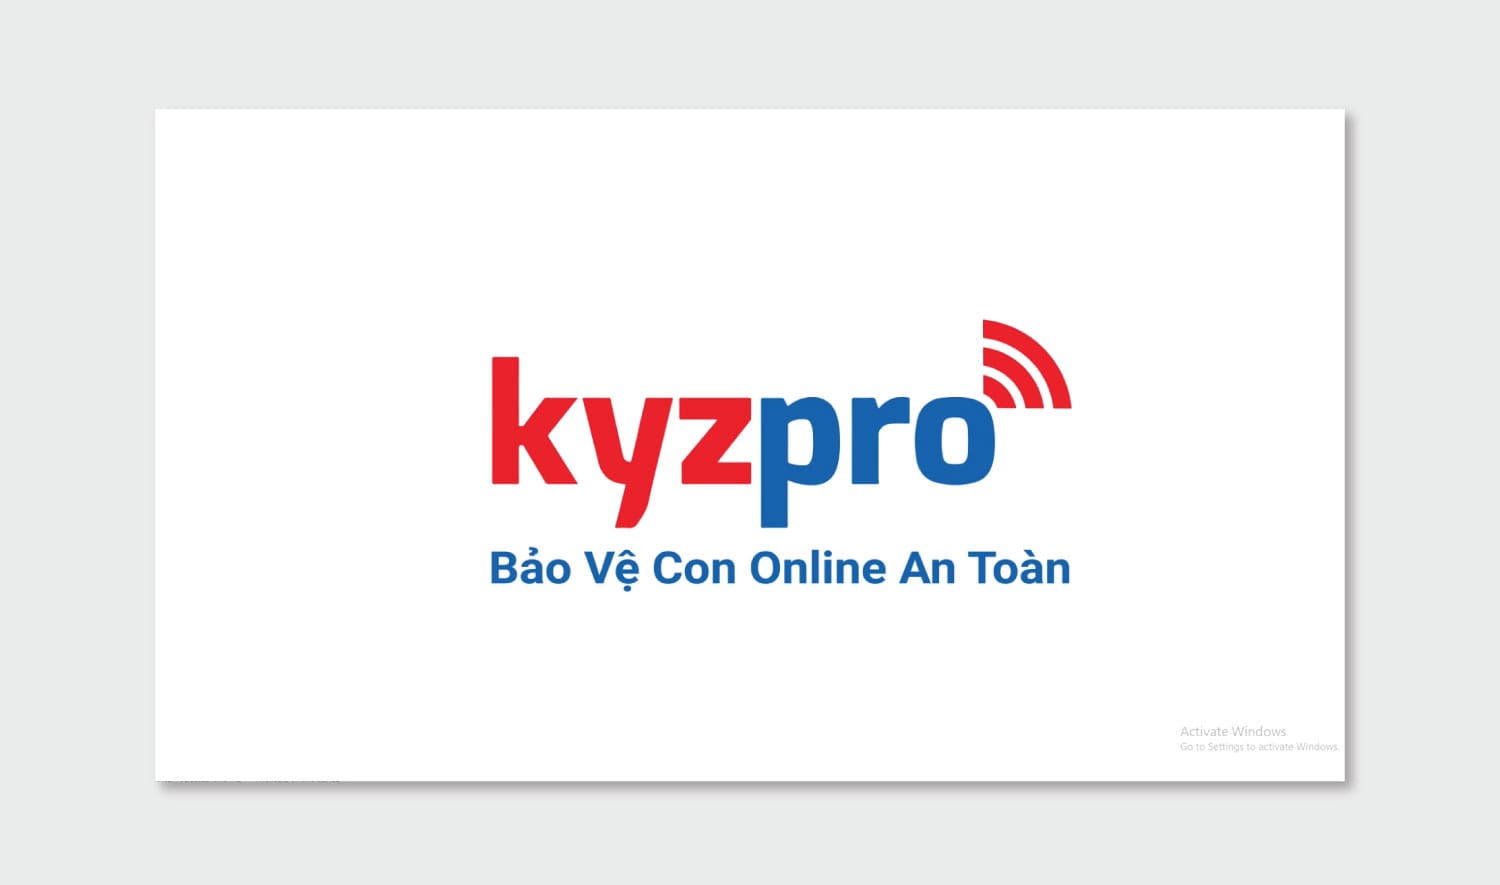 Dự án sản xuất tvc Kyzpro